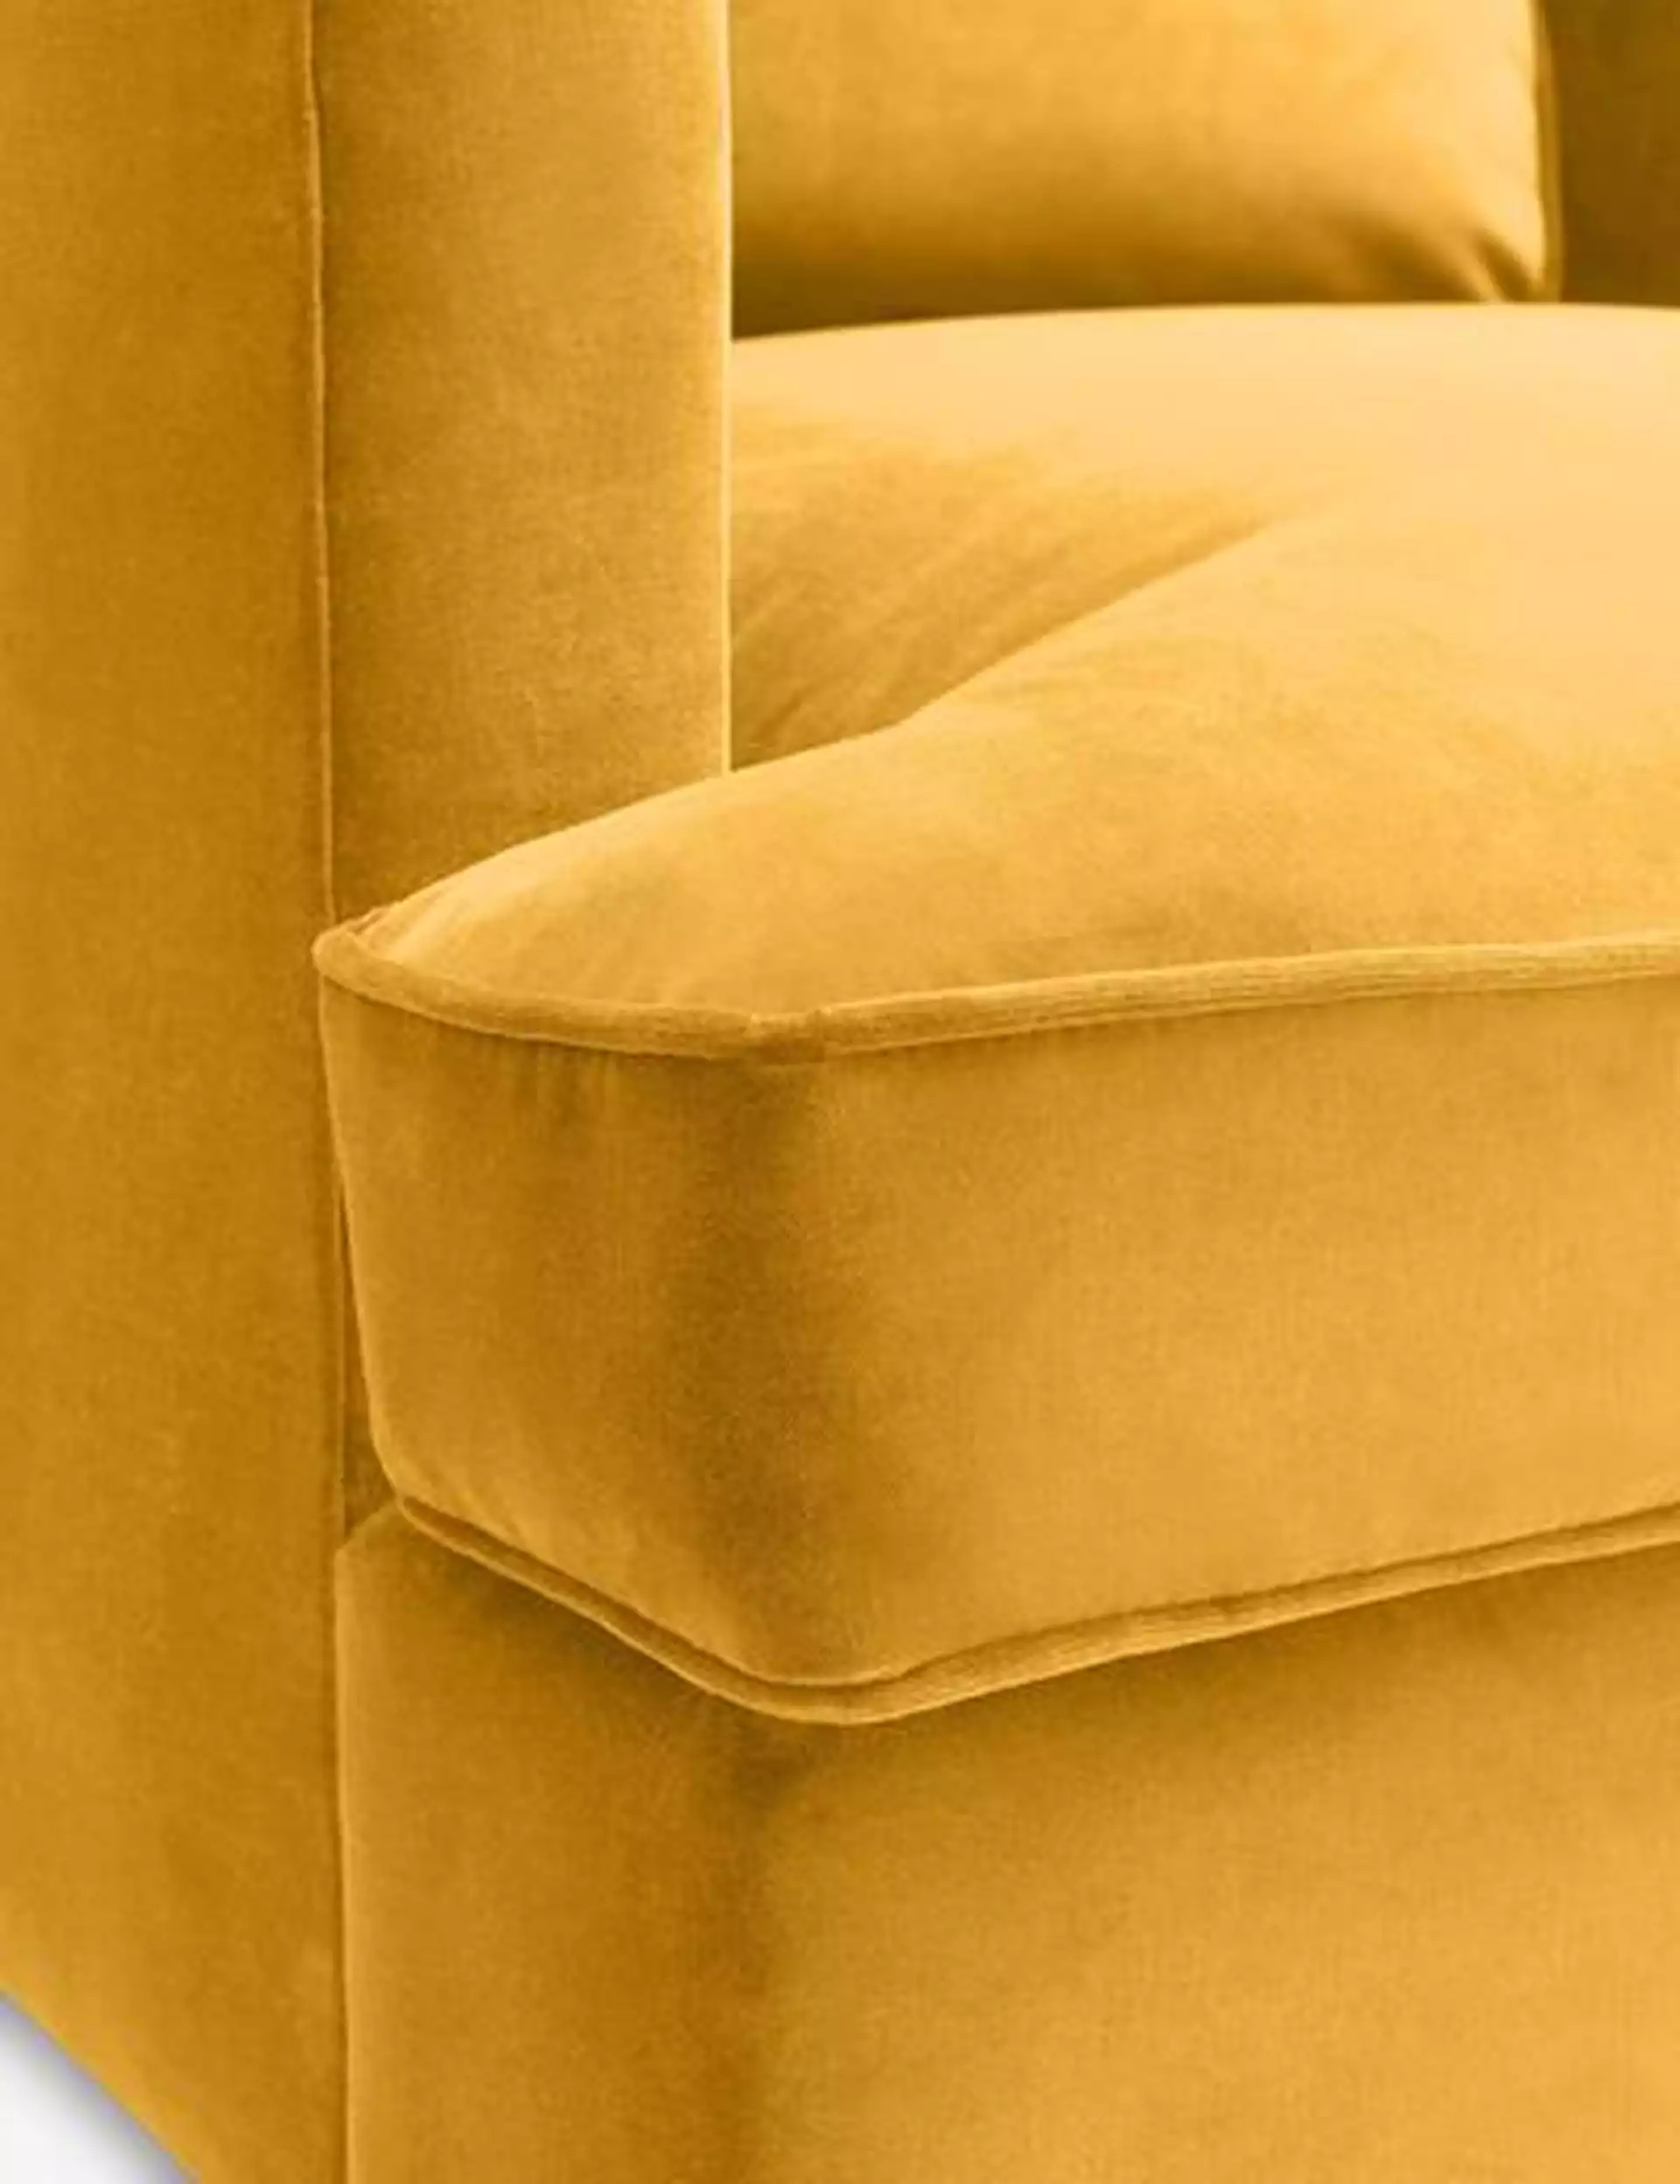 Belmont Velvet Chair, Goldenrod By Ginny Macdonald